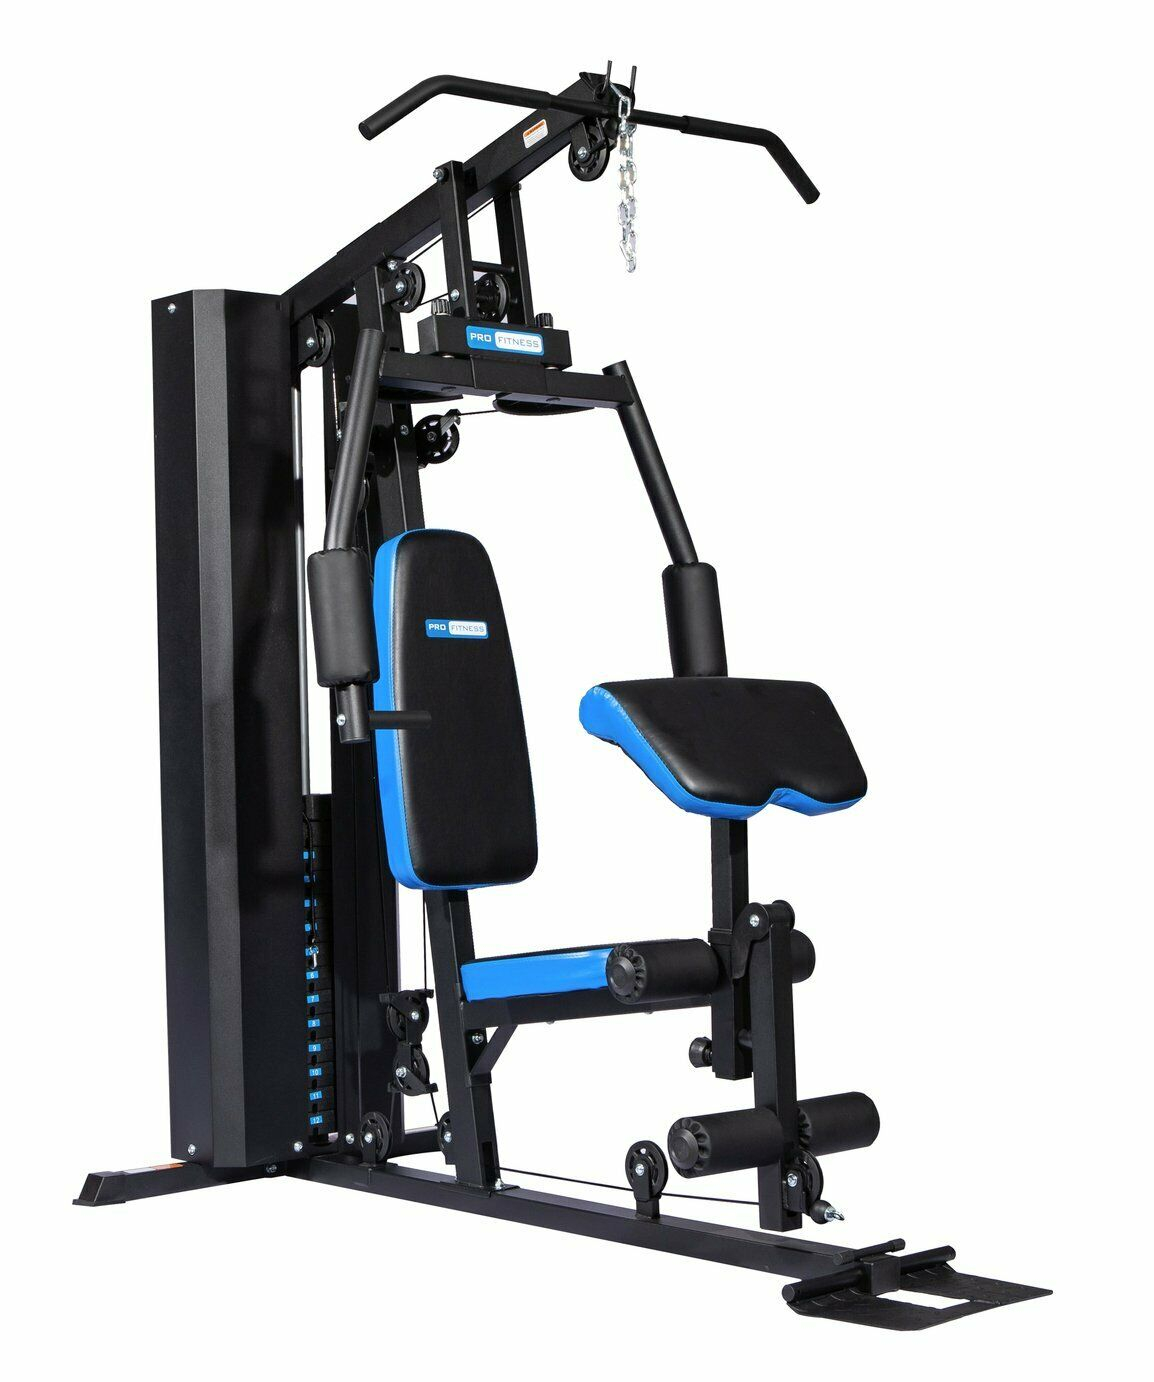 Pro Fitness Multi Home Gym 359 99 366 94 Delivered Argos Ebay Hotukdeals